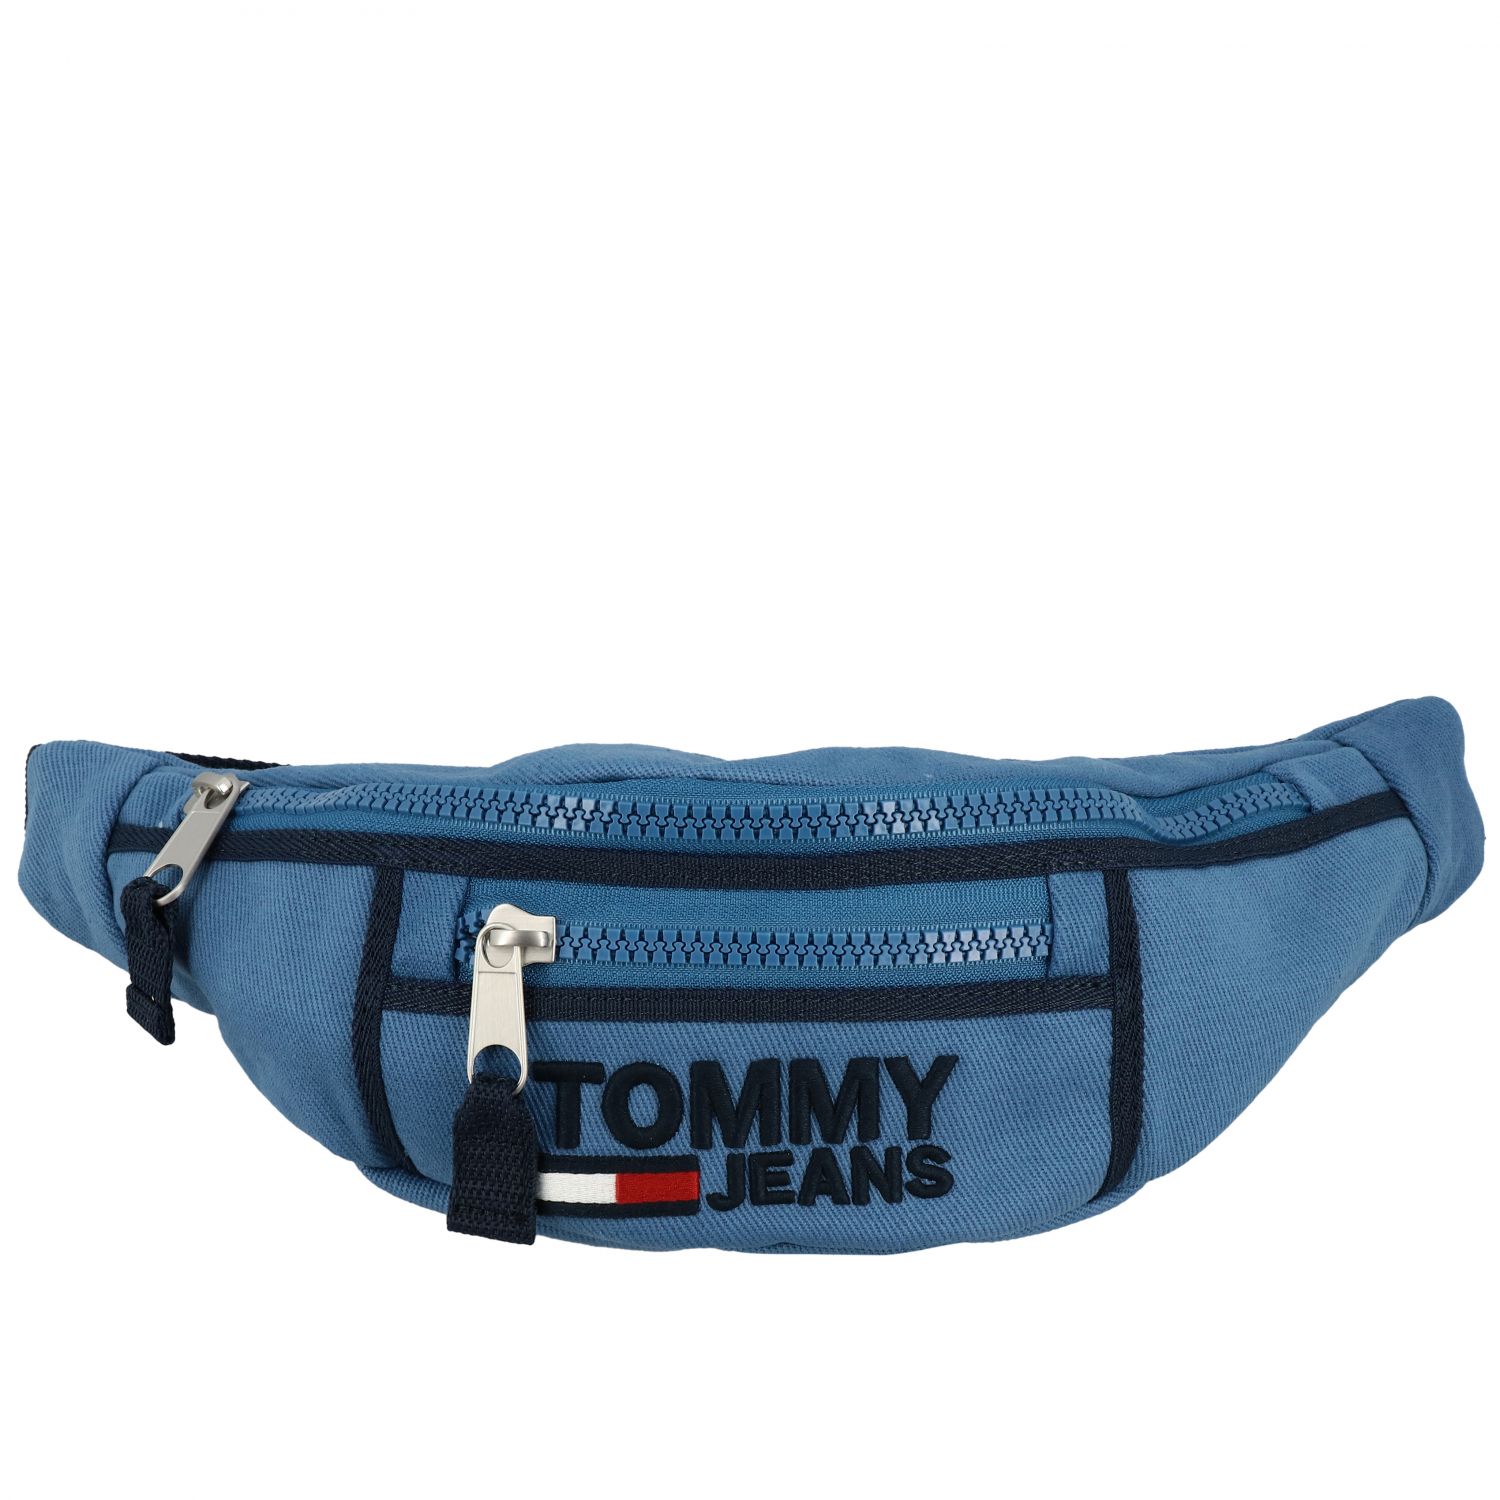 TOMMY HILFIGER: Belt bag men | Belt Bag Tommy Hilfiger Men Blue | Belt ...